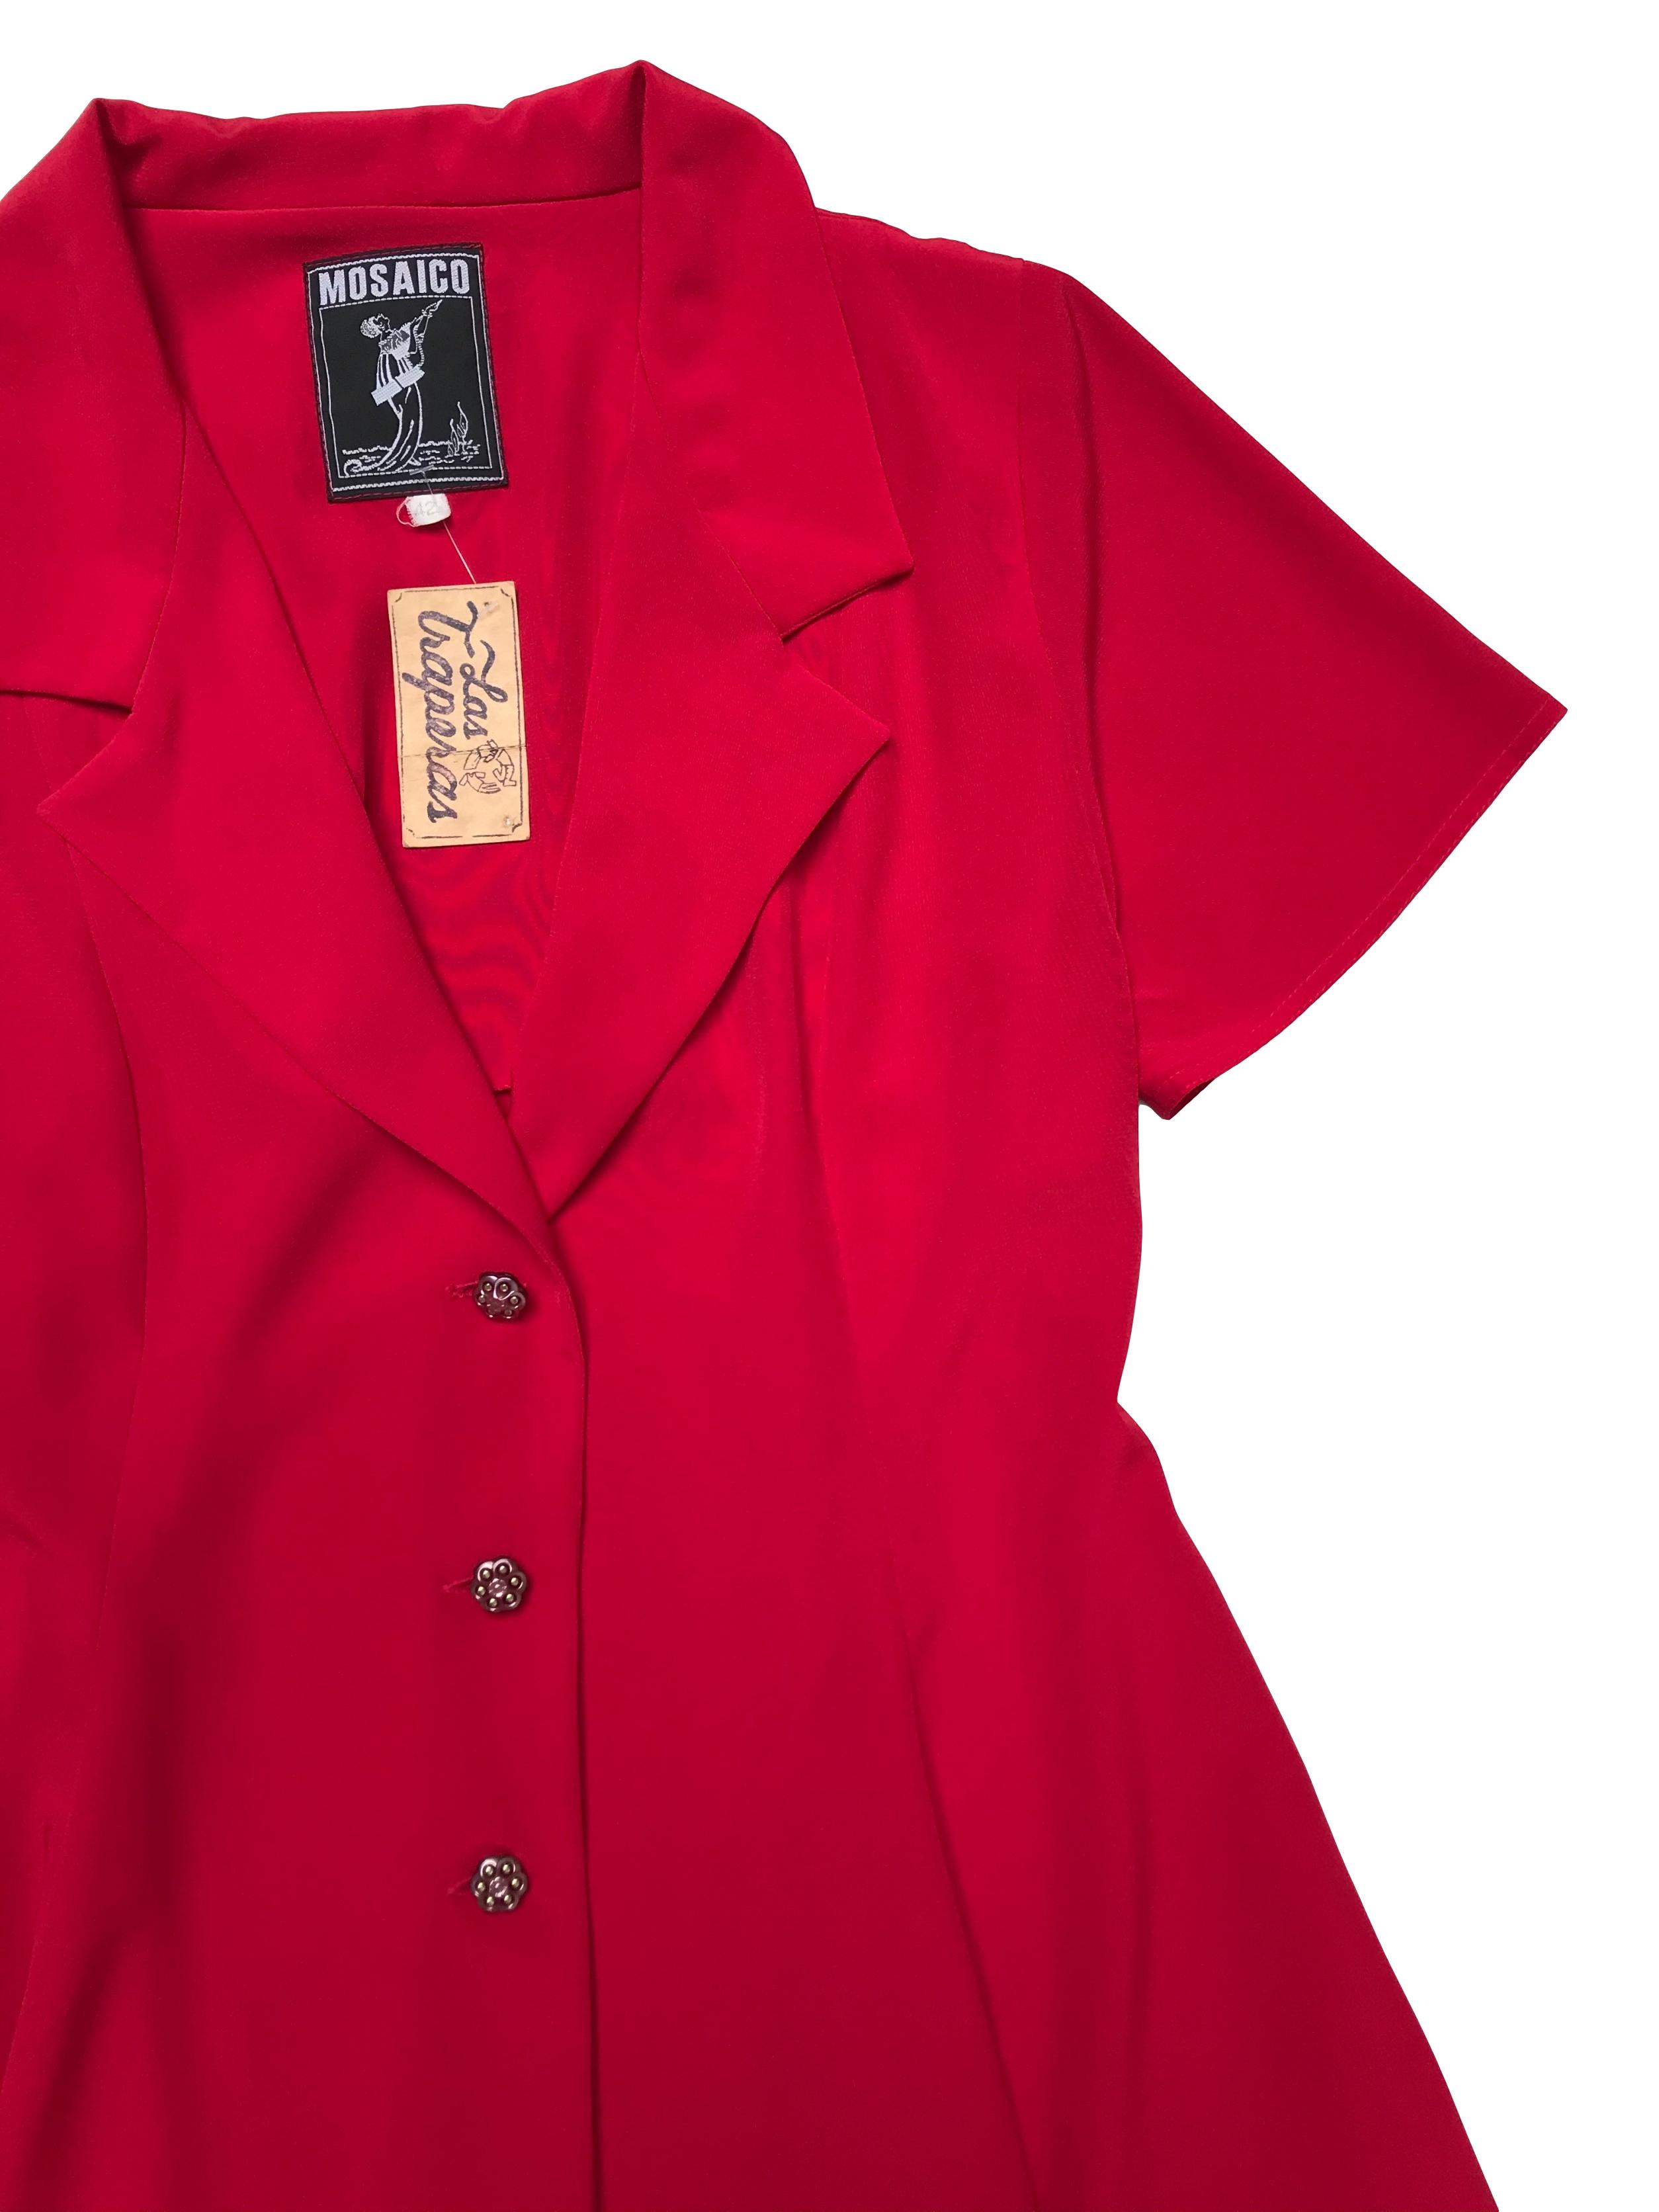 Blazer vintage rojo de tela fluida, corte campana con cuelo y tres botones joya al centro. Tiene falda conjunto. Busto 94cm Largo 82cm 